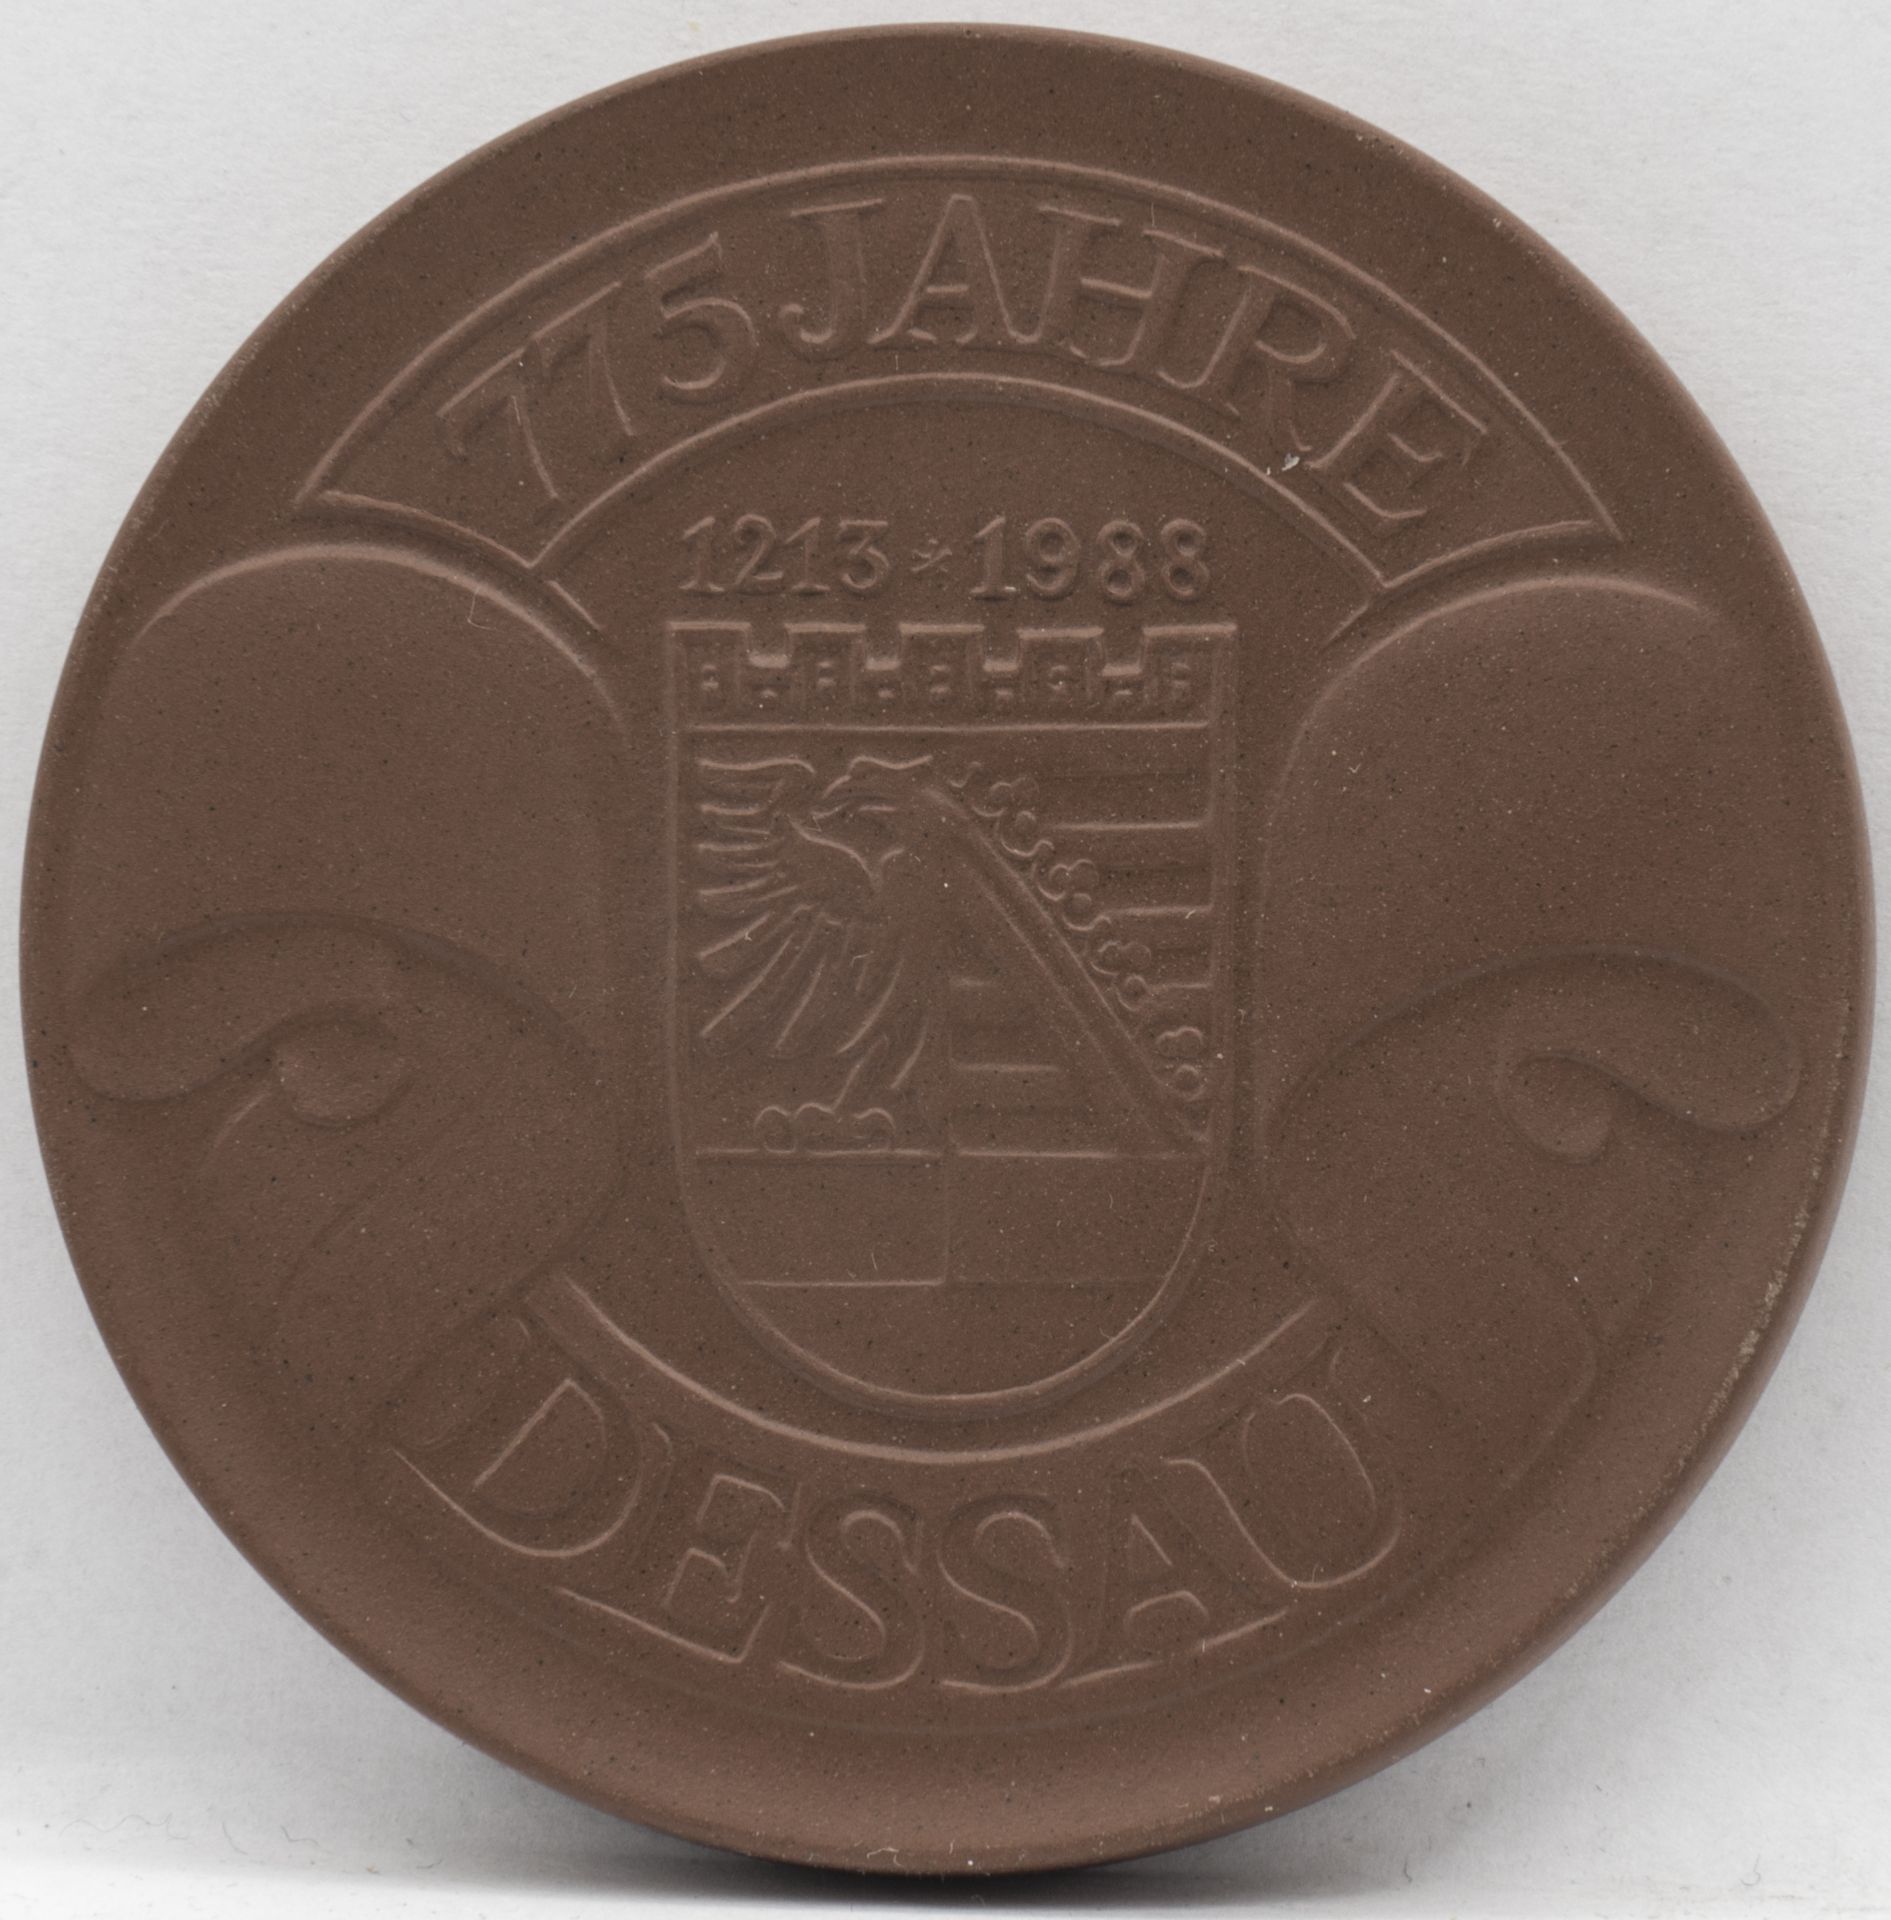 Meissen Porzellan - Medaille 775 Jahre Dessau. Durchmesser: ca. 67 mm. Erhaltung: VZ. - Image 2 of 2